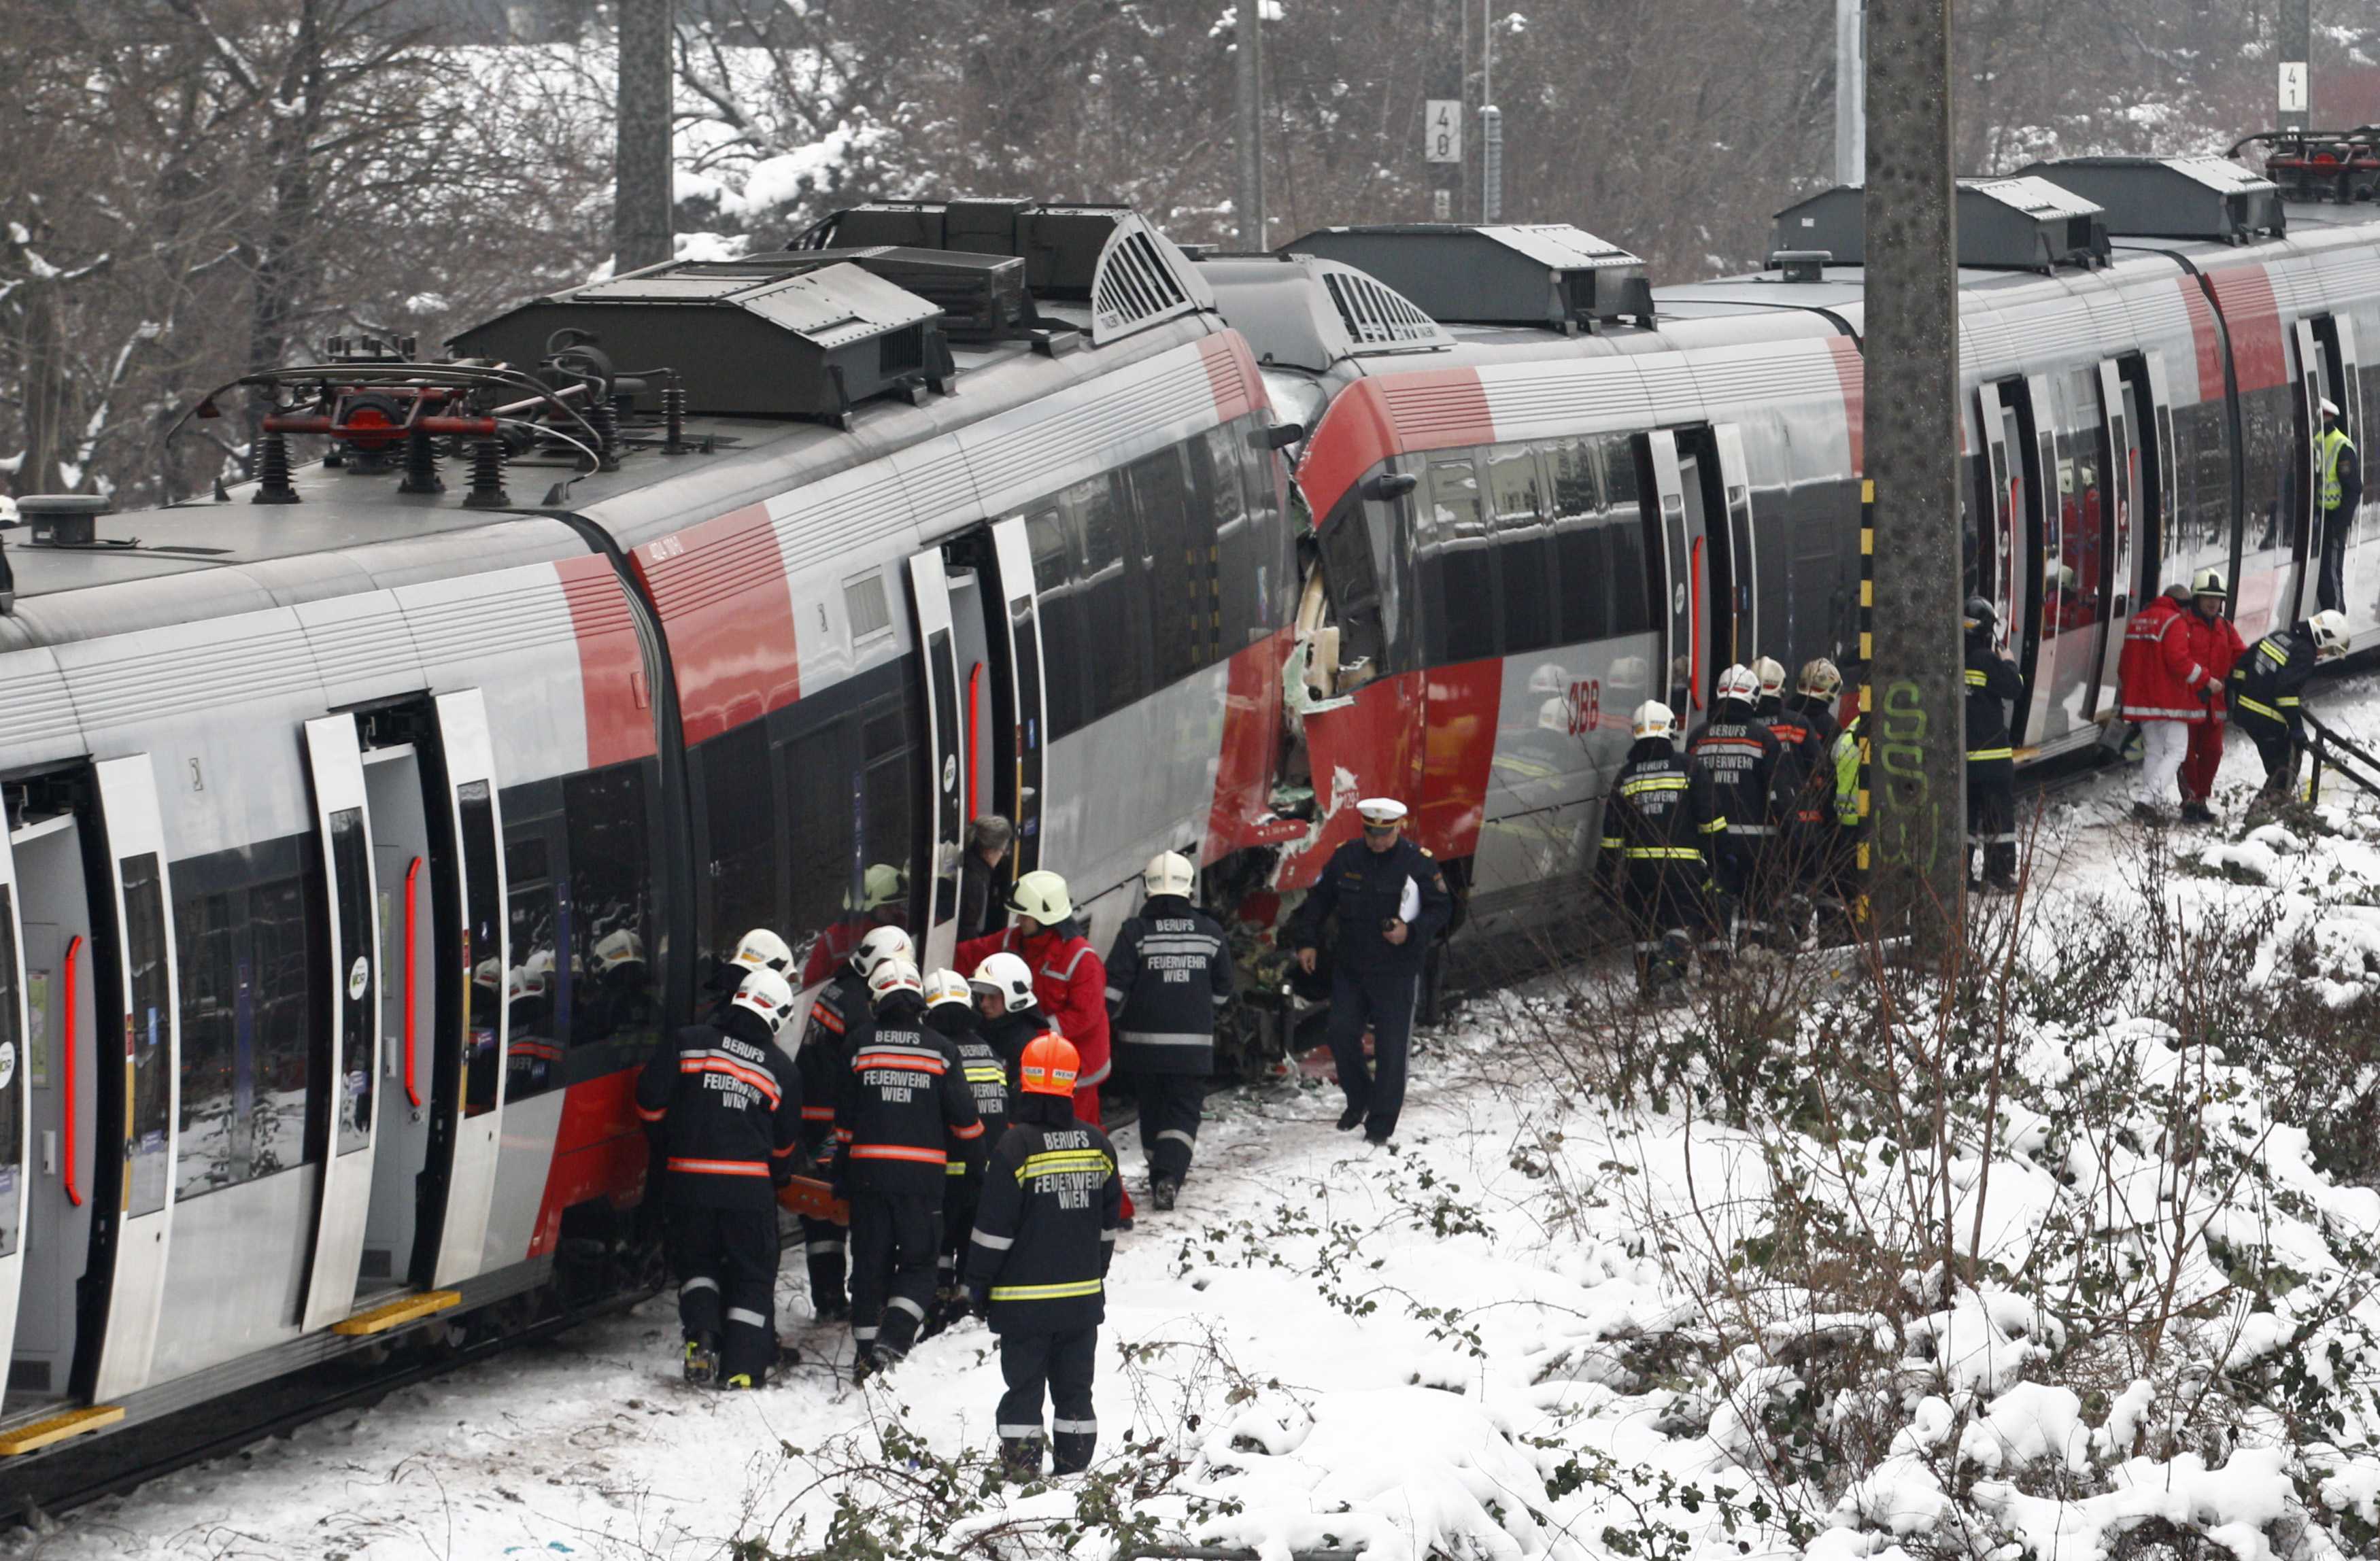 Μετωπική σύγκρουση τρένων στη Βιέννη με 41 τραυματίες, οι 5 σοβαρά (ΦΩΤΟ)